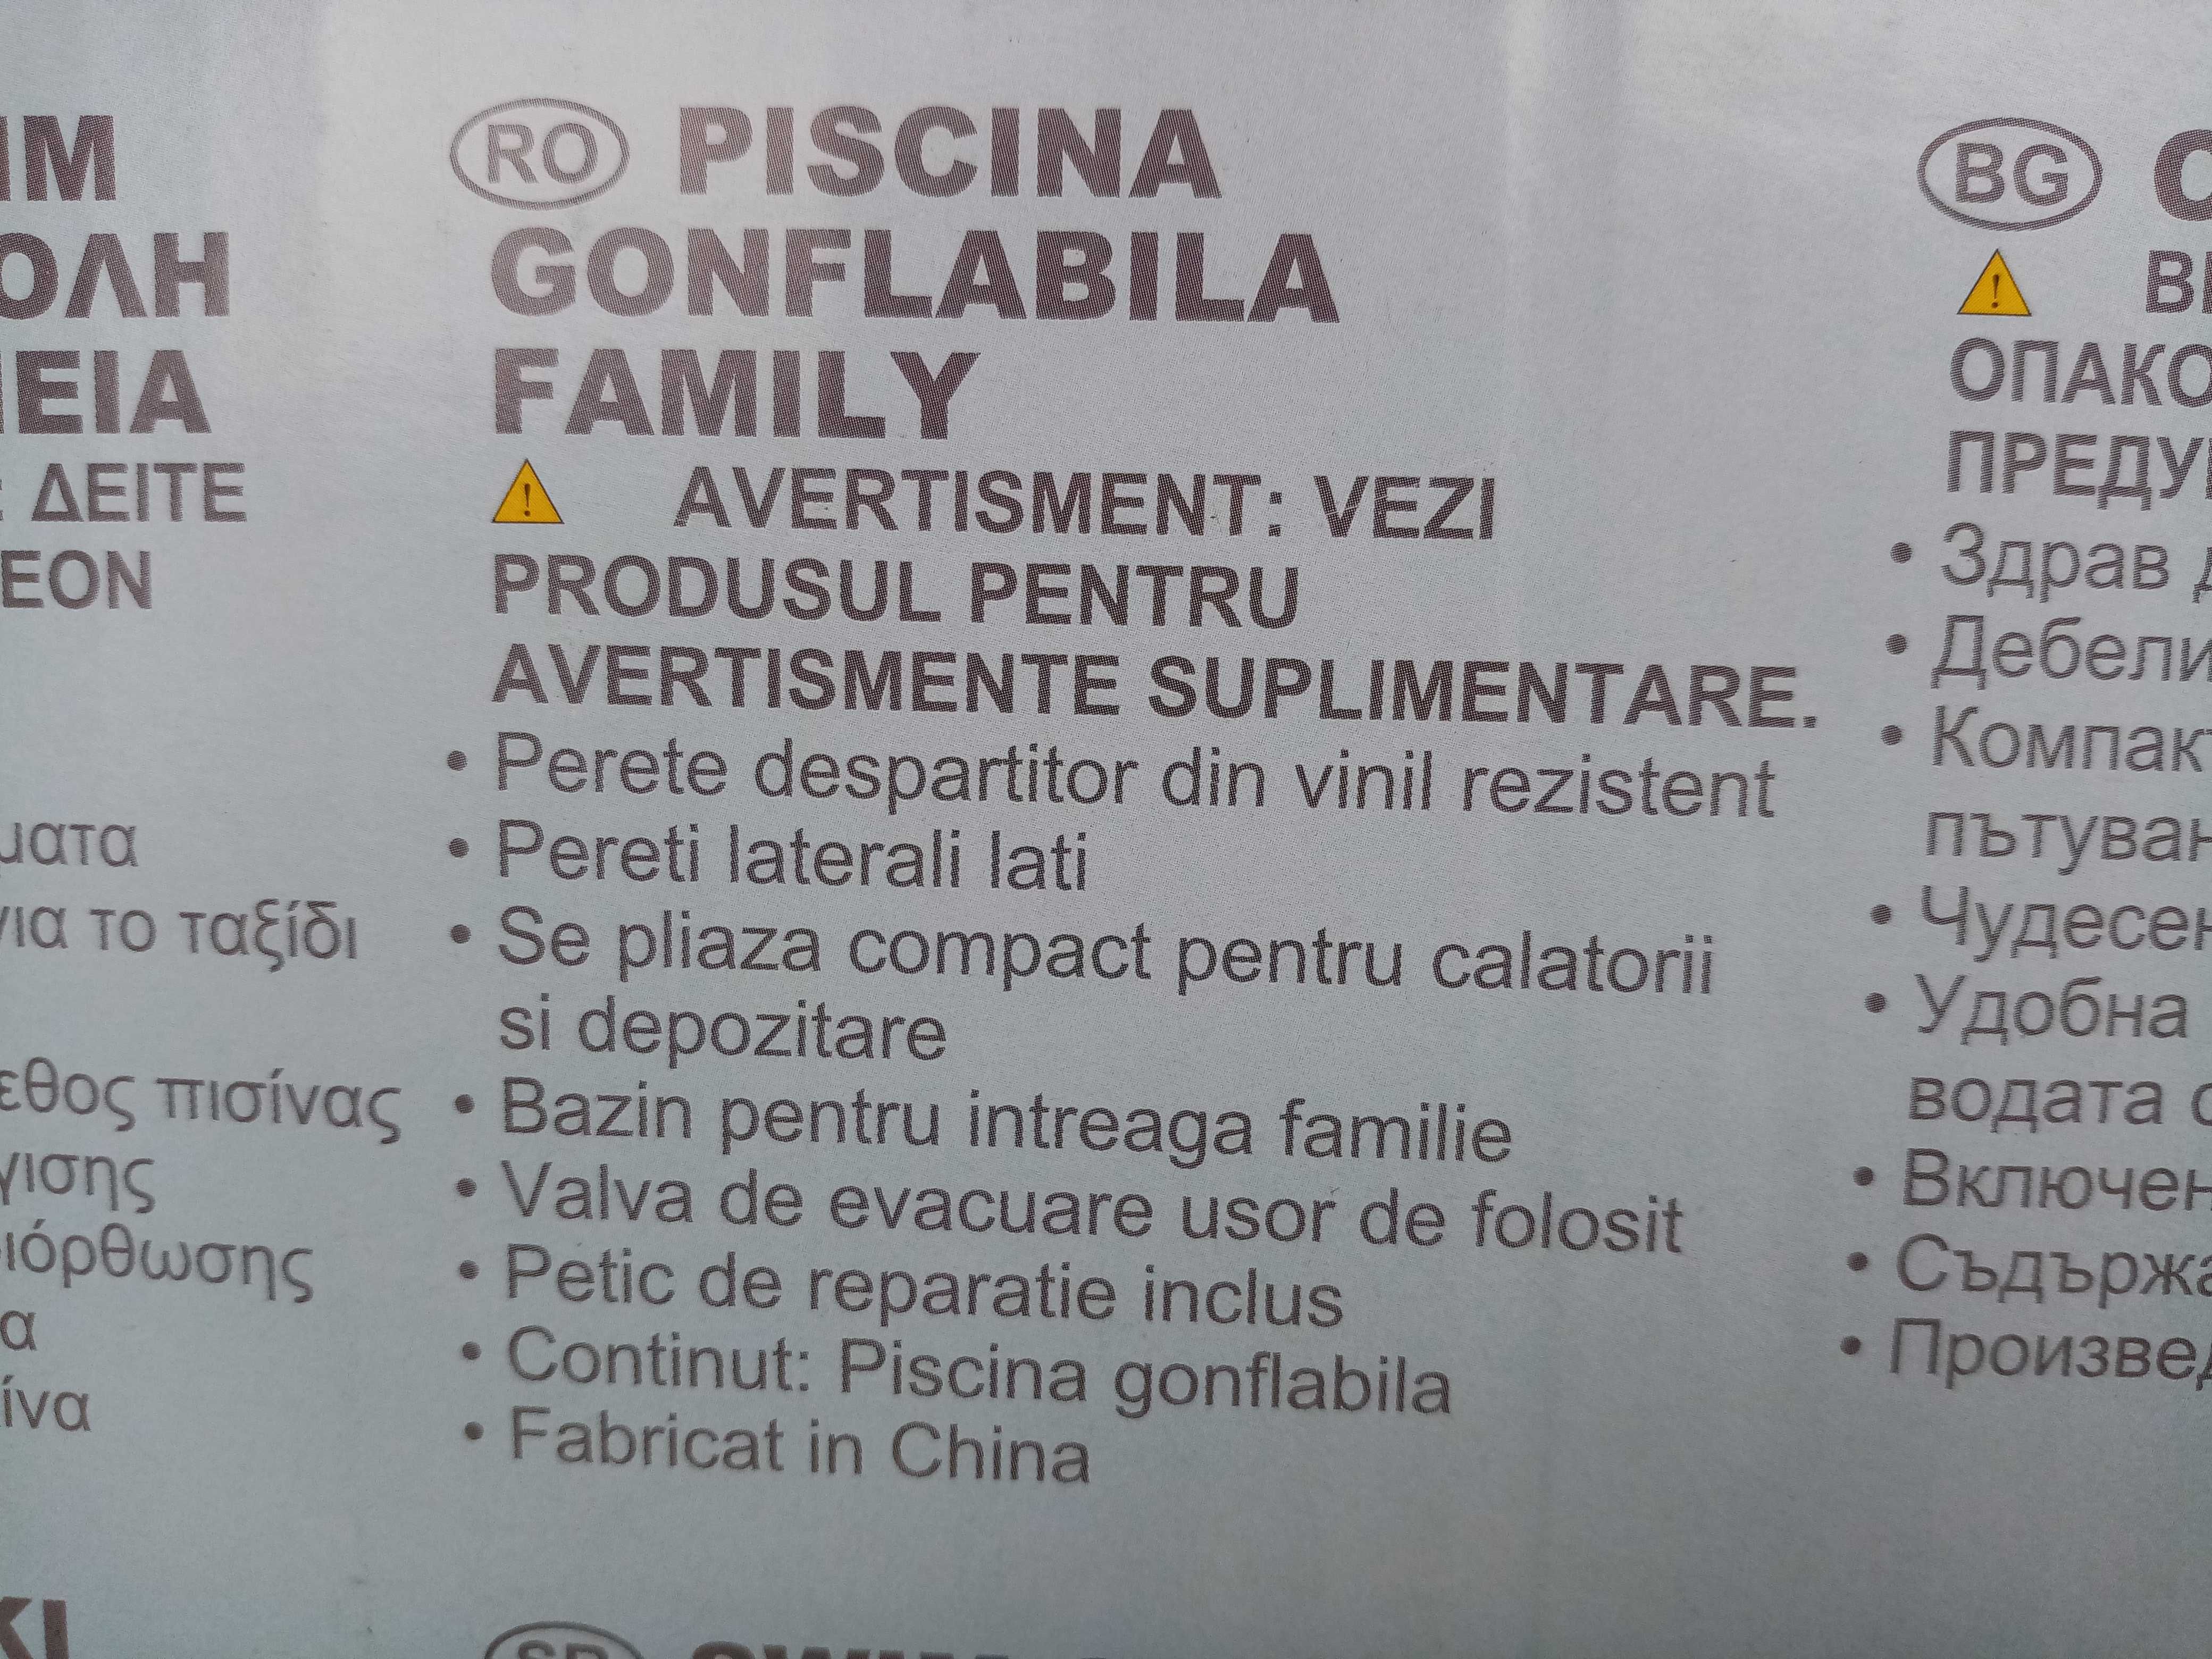 Piscina Intex gonflabila